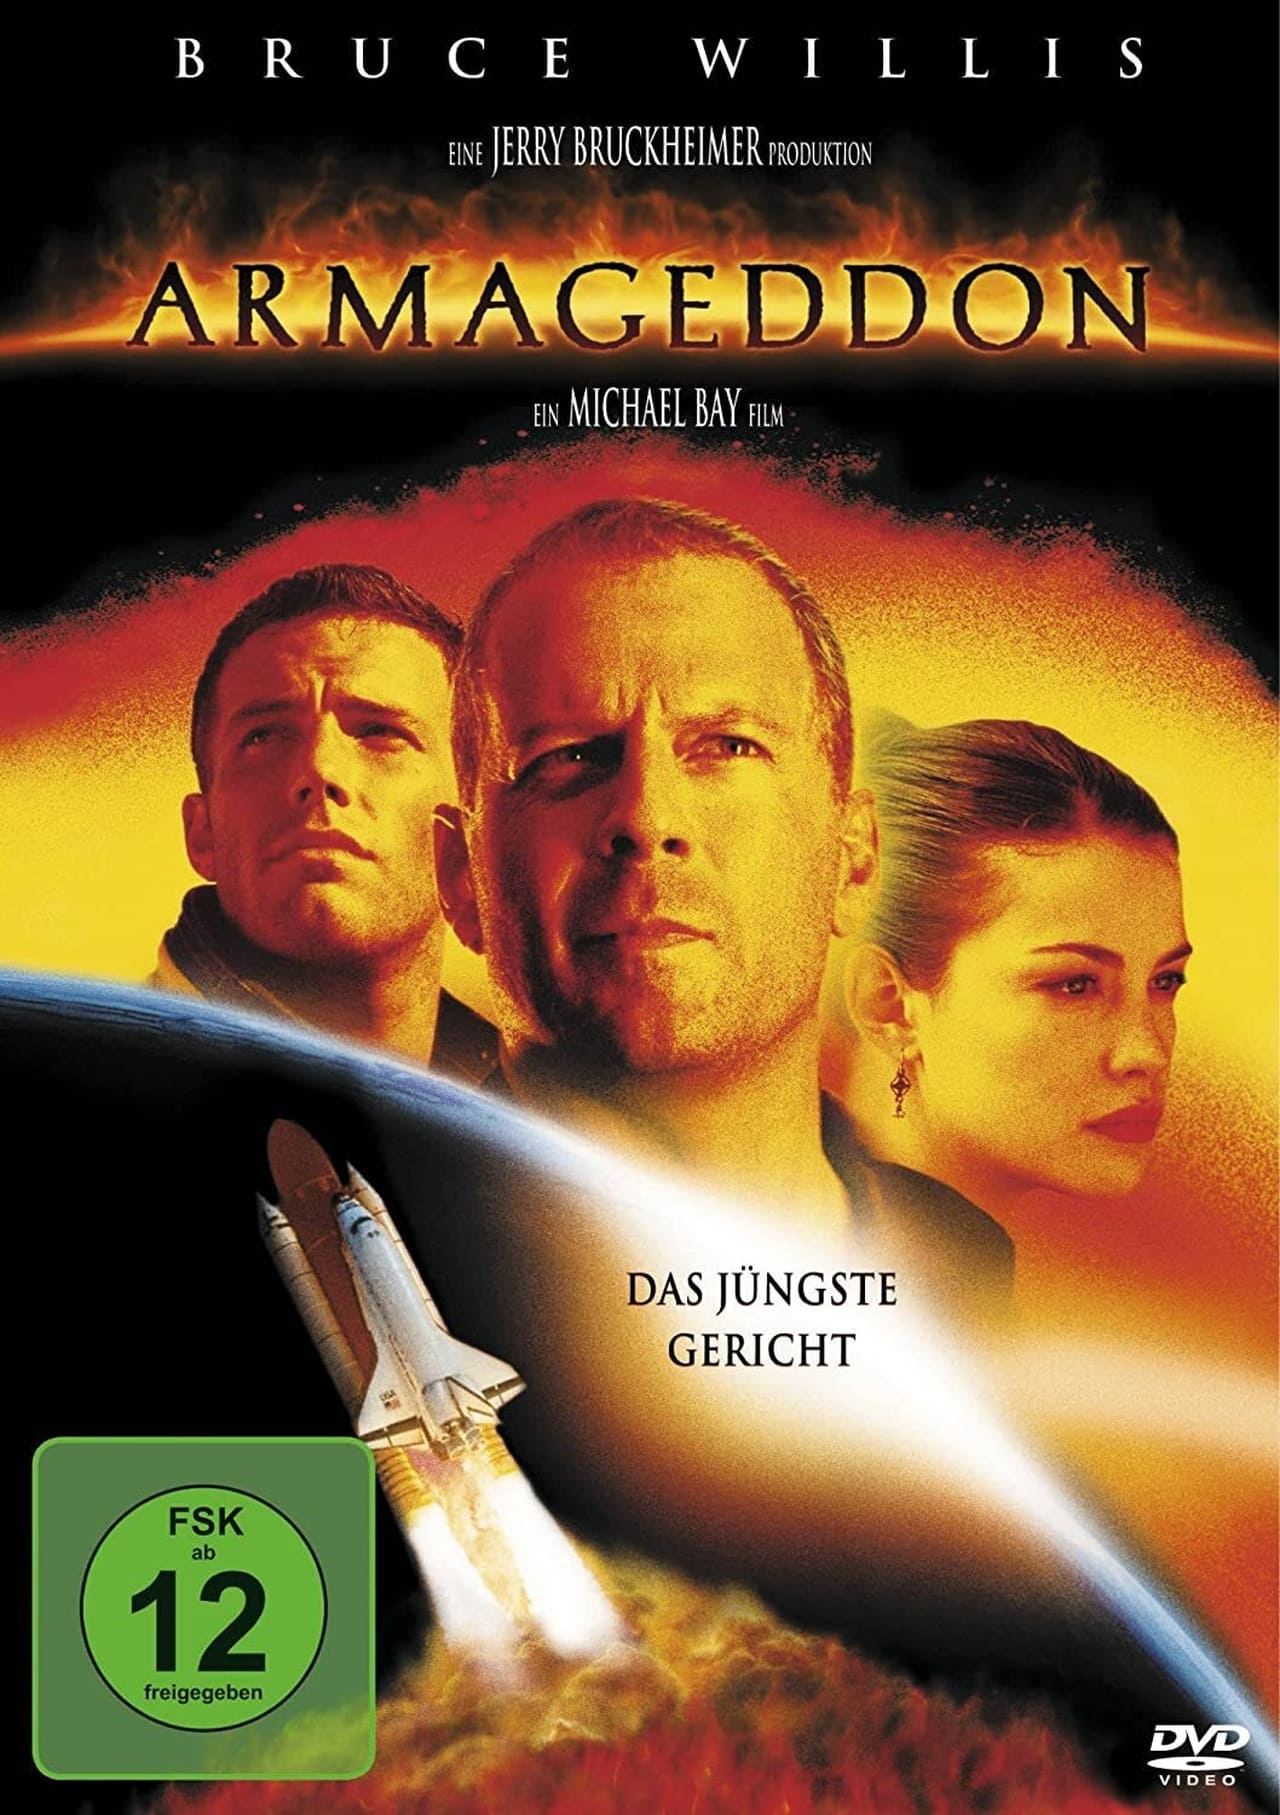 Armageddon (1998) 448Kbps 23.976Fps 48Khz 5.1Ch DVD Turkish Audio TAC